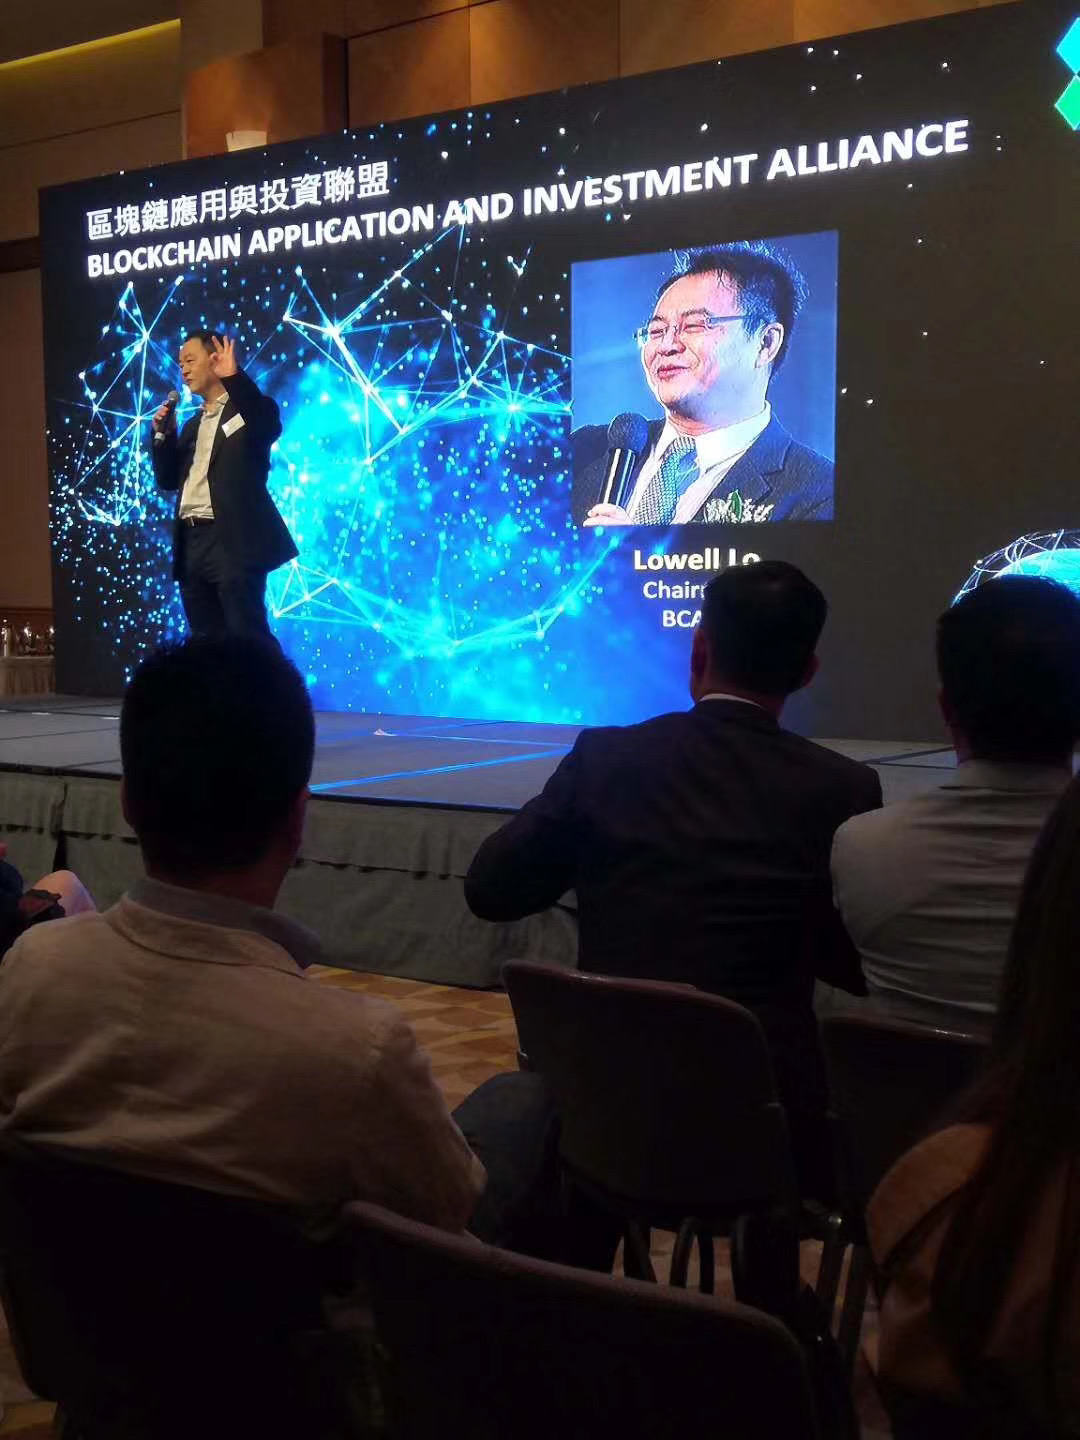 2019年3月6日邦盟匯駿集團“區塊鏈應用及投資聯盟”在香港會展中心啟動成立